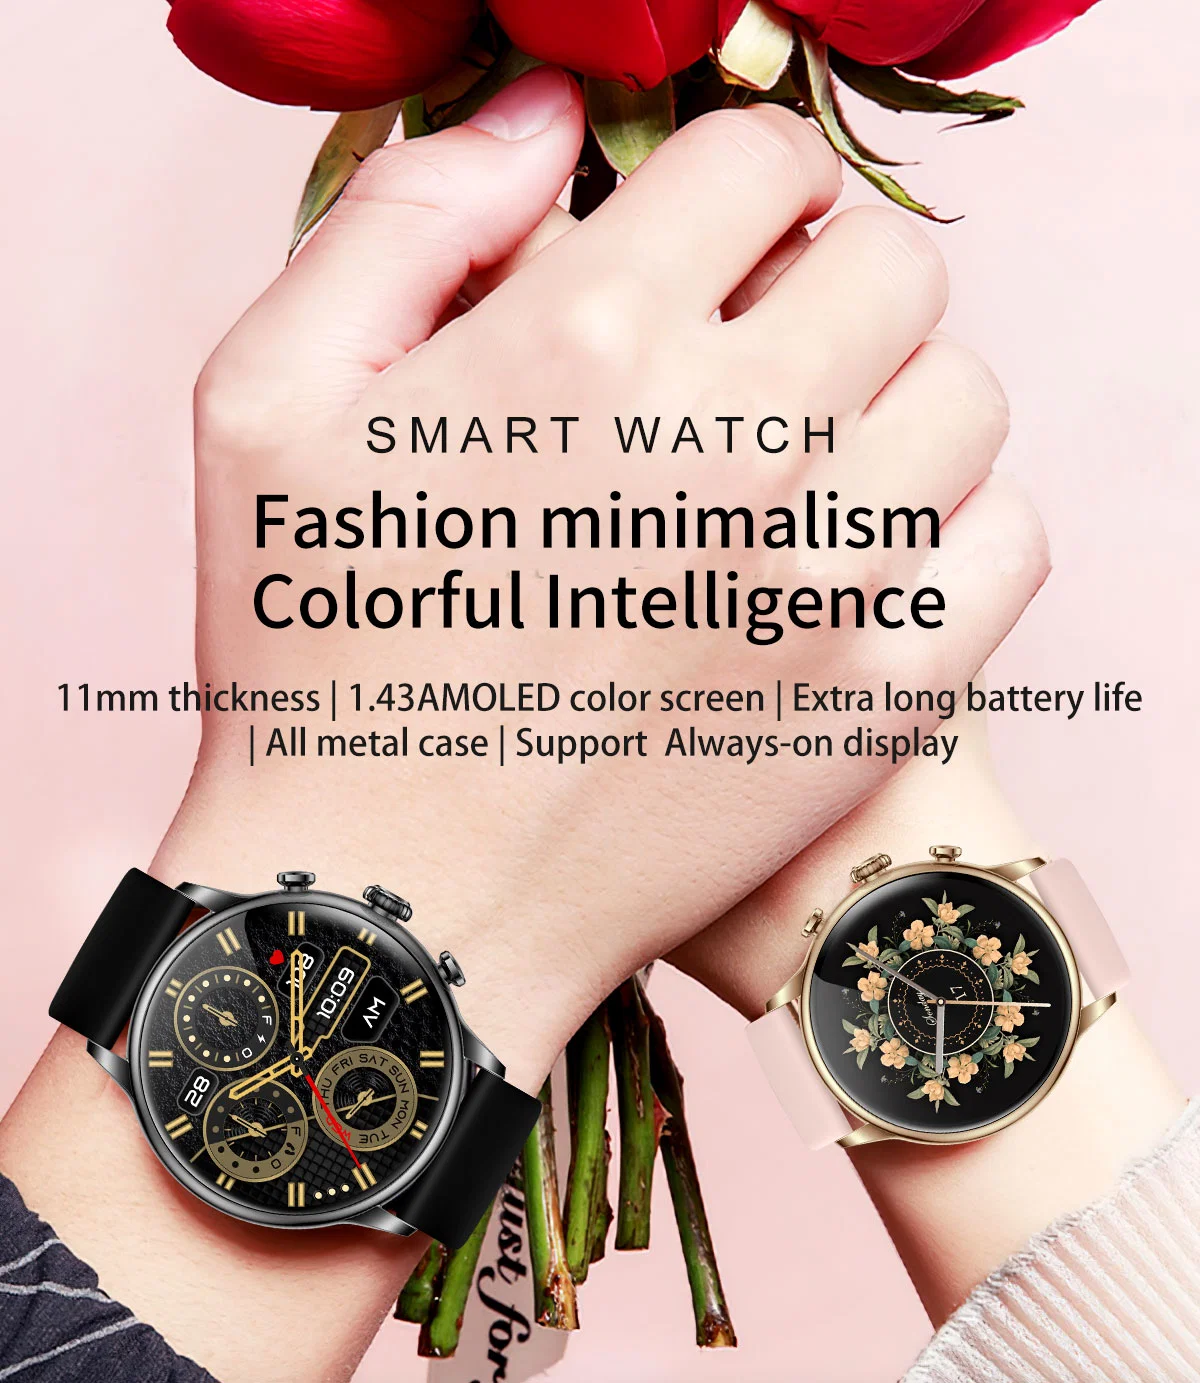 Nueva pantalla AMOLED Moda Regalo llamada Reloj inteligente inteligente Sport Wrist Watch Factory Custom Waterproof CE Precio para hombres Lady Android Ios Teléfono móvil